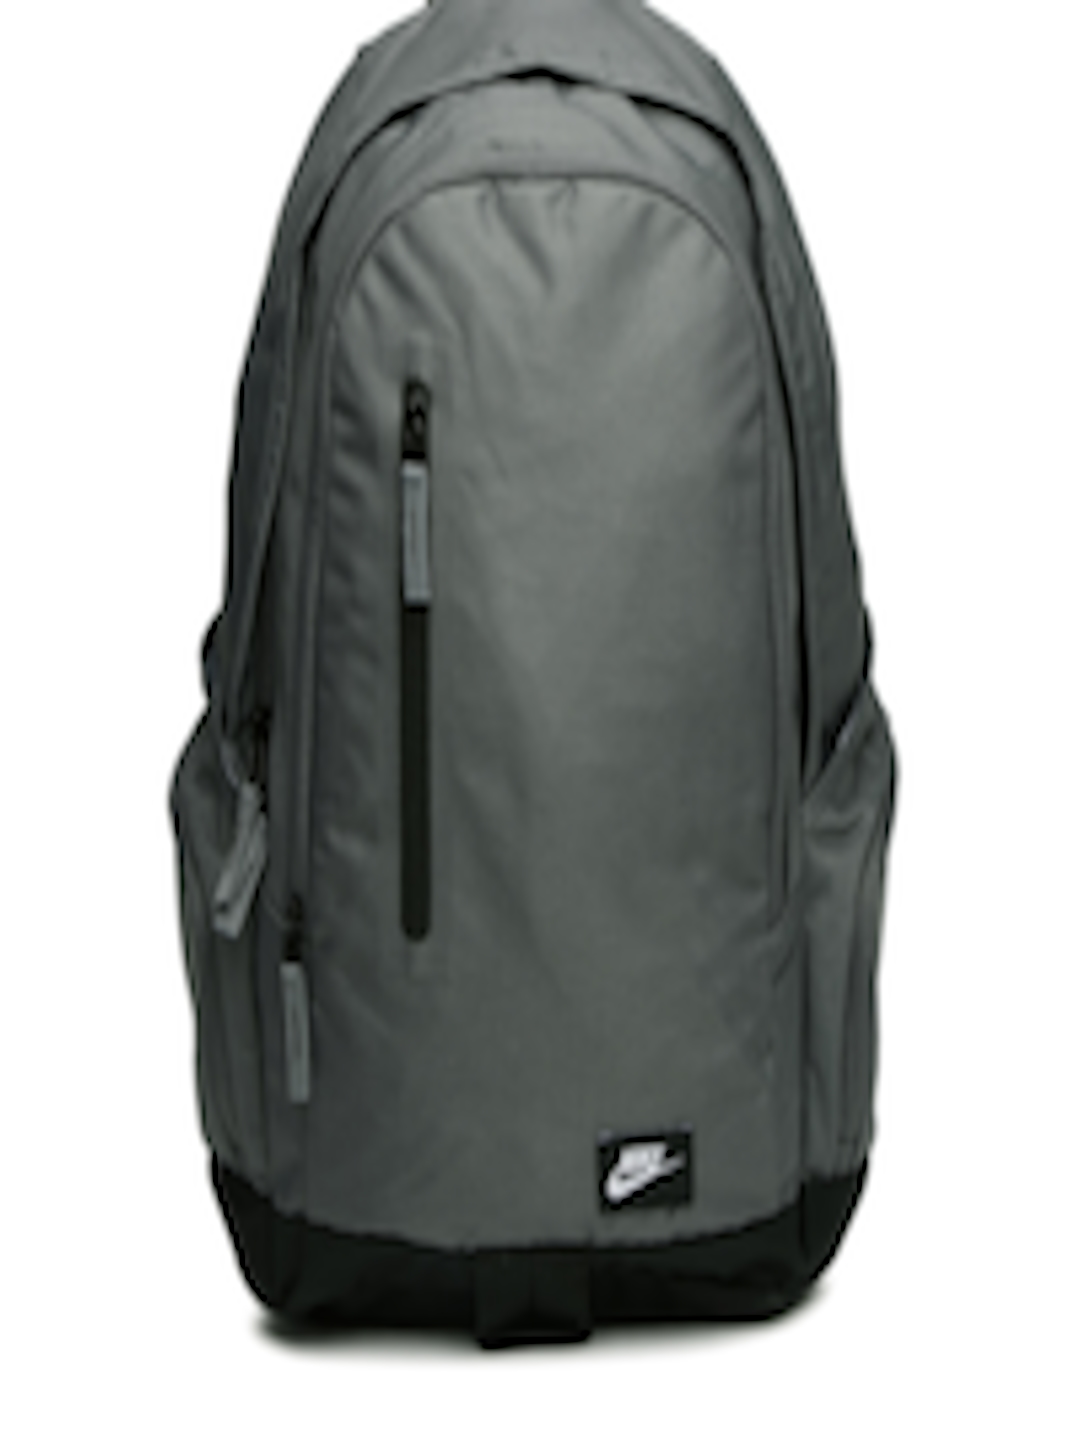 Buy Nike Men Grey All Access Fullfare Laptop Backpack - Backpacks for ...